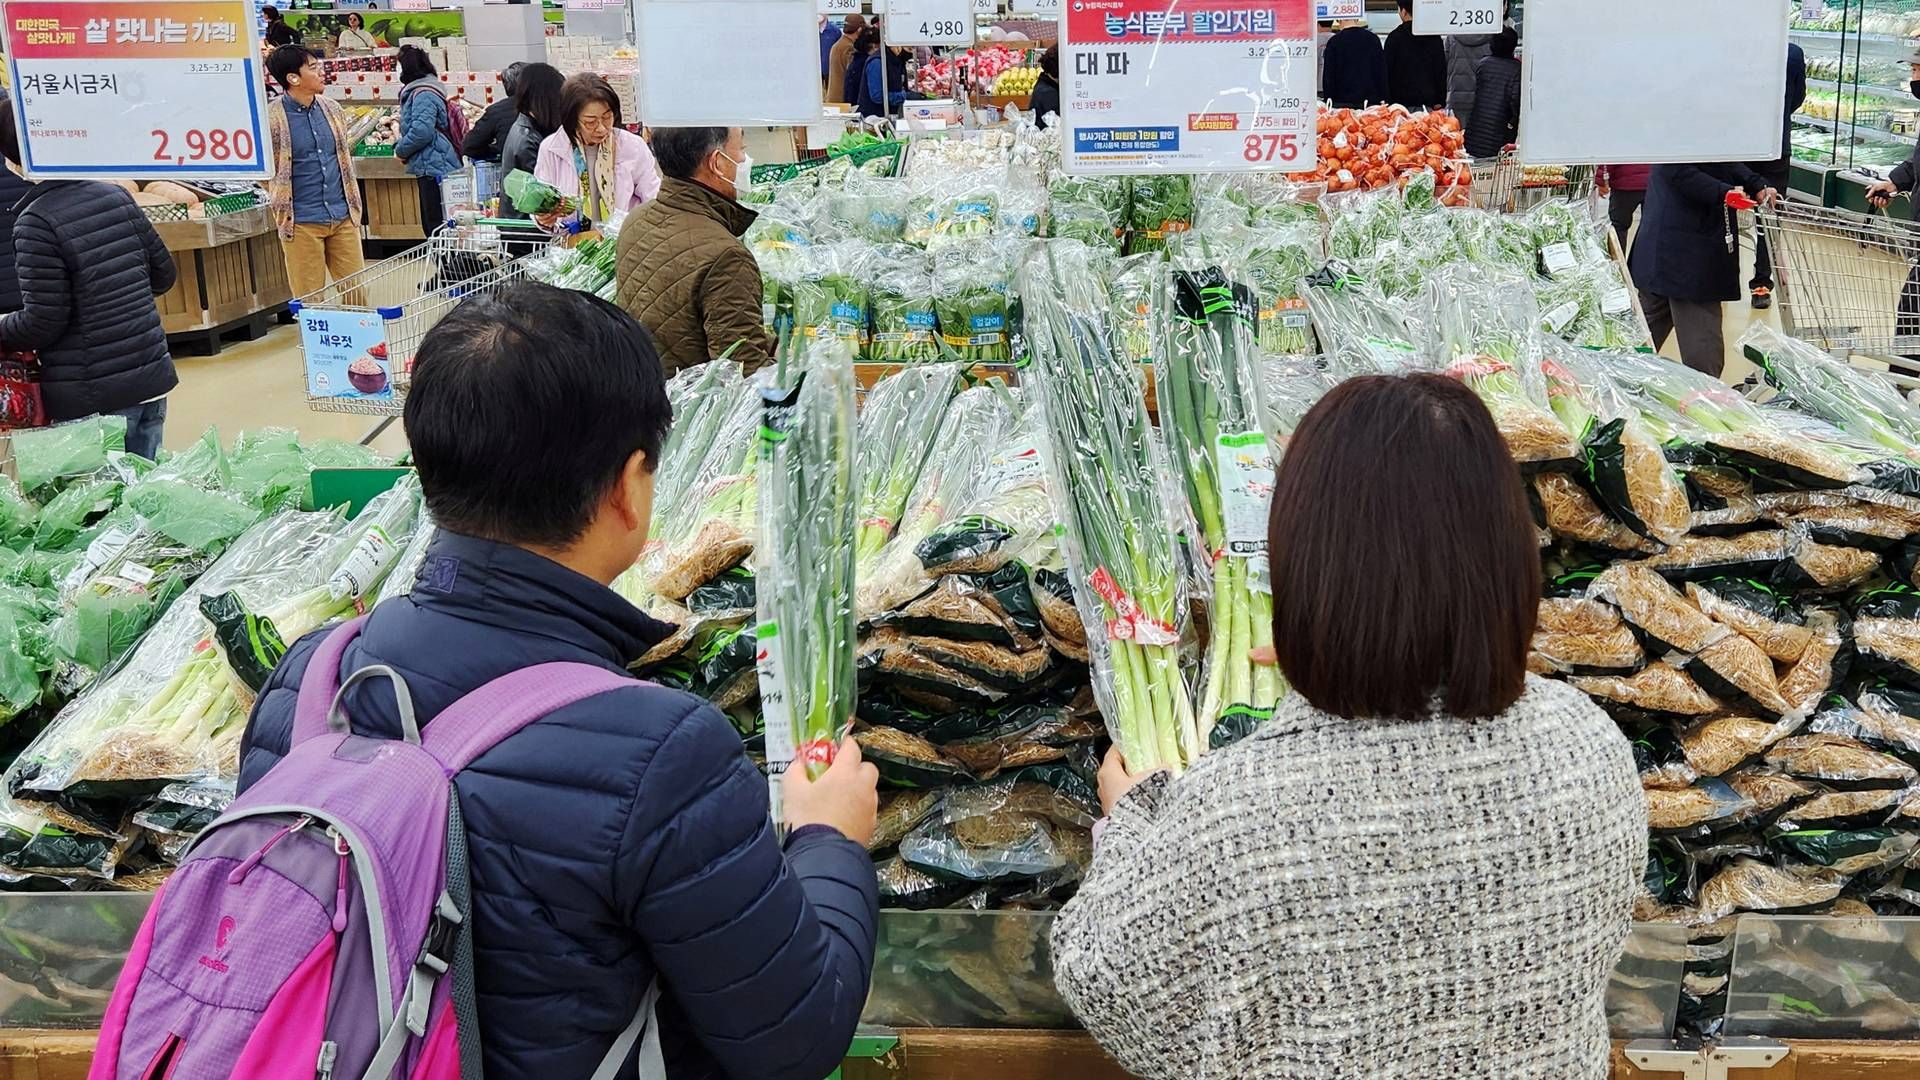 Både Sydkorea og Frankrigs regering er nu gået ind i kampen mod såkaldt shrinkflation. | Foto: Daewoung Kim